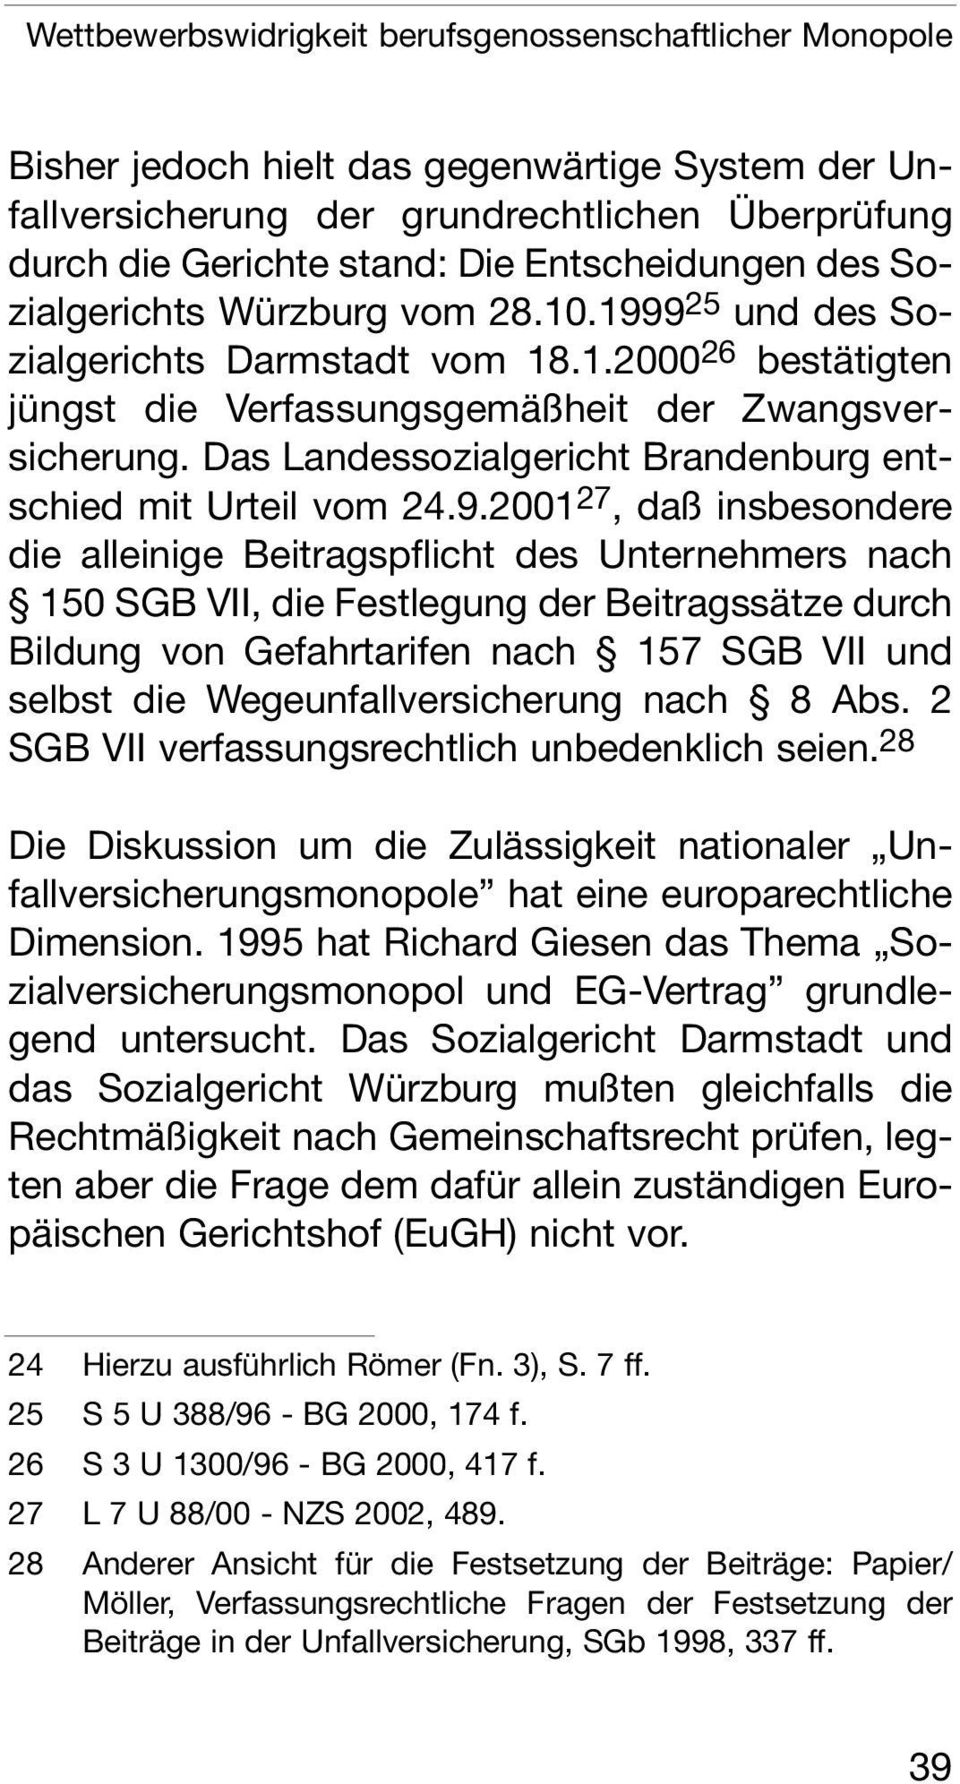 Das Landessozialgericht Brandenburg entschied mit Urteil vom 24.9.